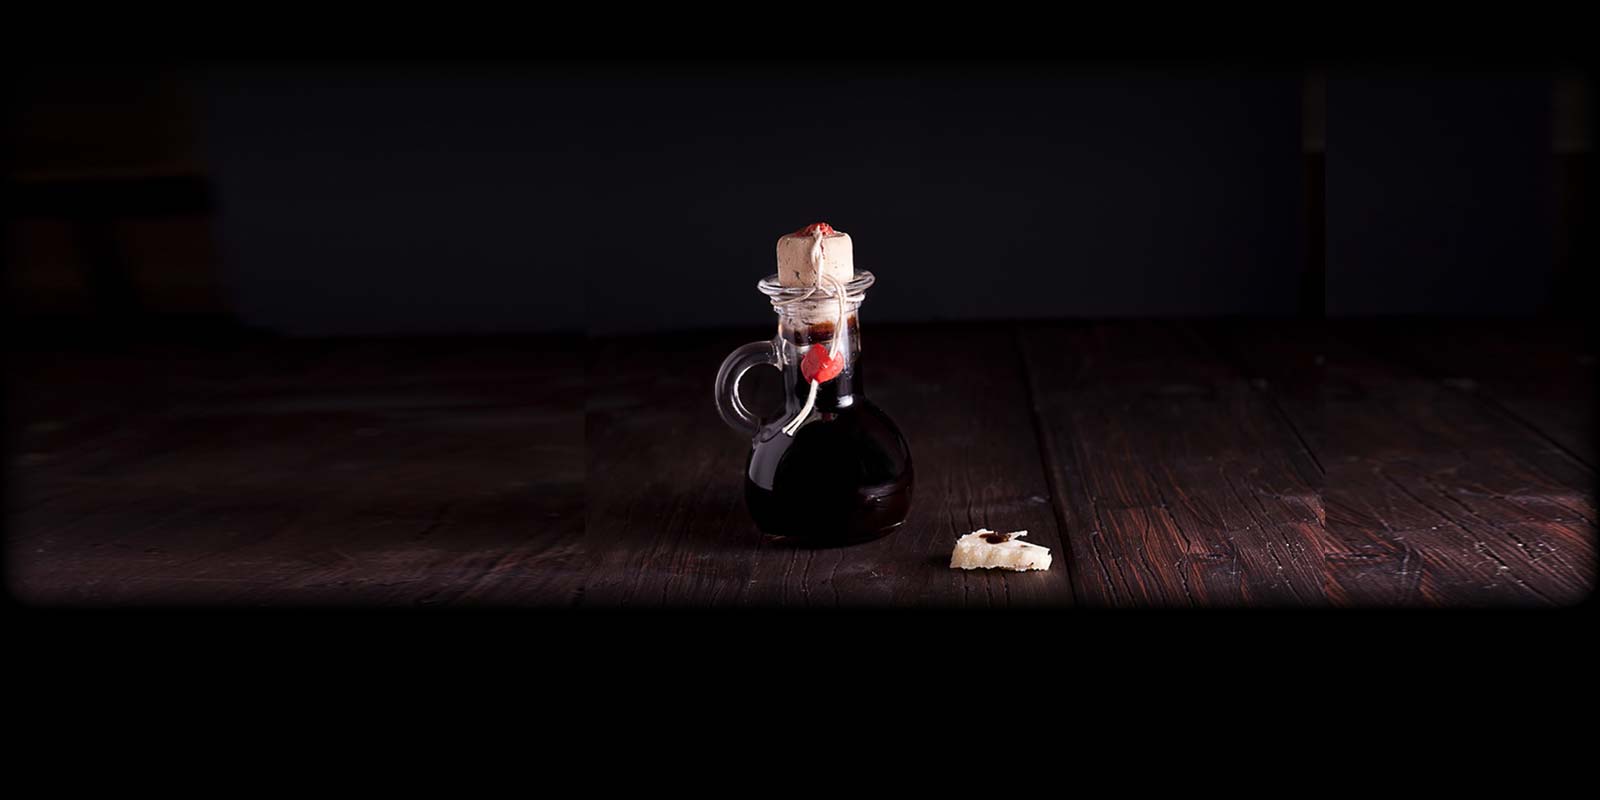 Aceto Balsamique Traditionnel Ce vinaigre est un produit purement naturel, sans conservateurs ni colorants. Seulement environ 10 000 litres sont produits chaque annee, ce qui en fait l`un des vinaigres les plus rares et les plus precieux au monde.